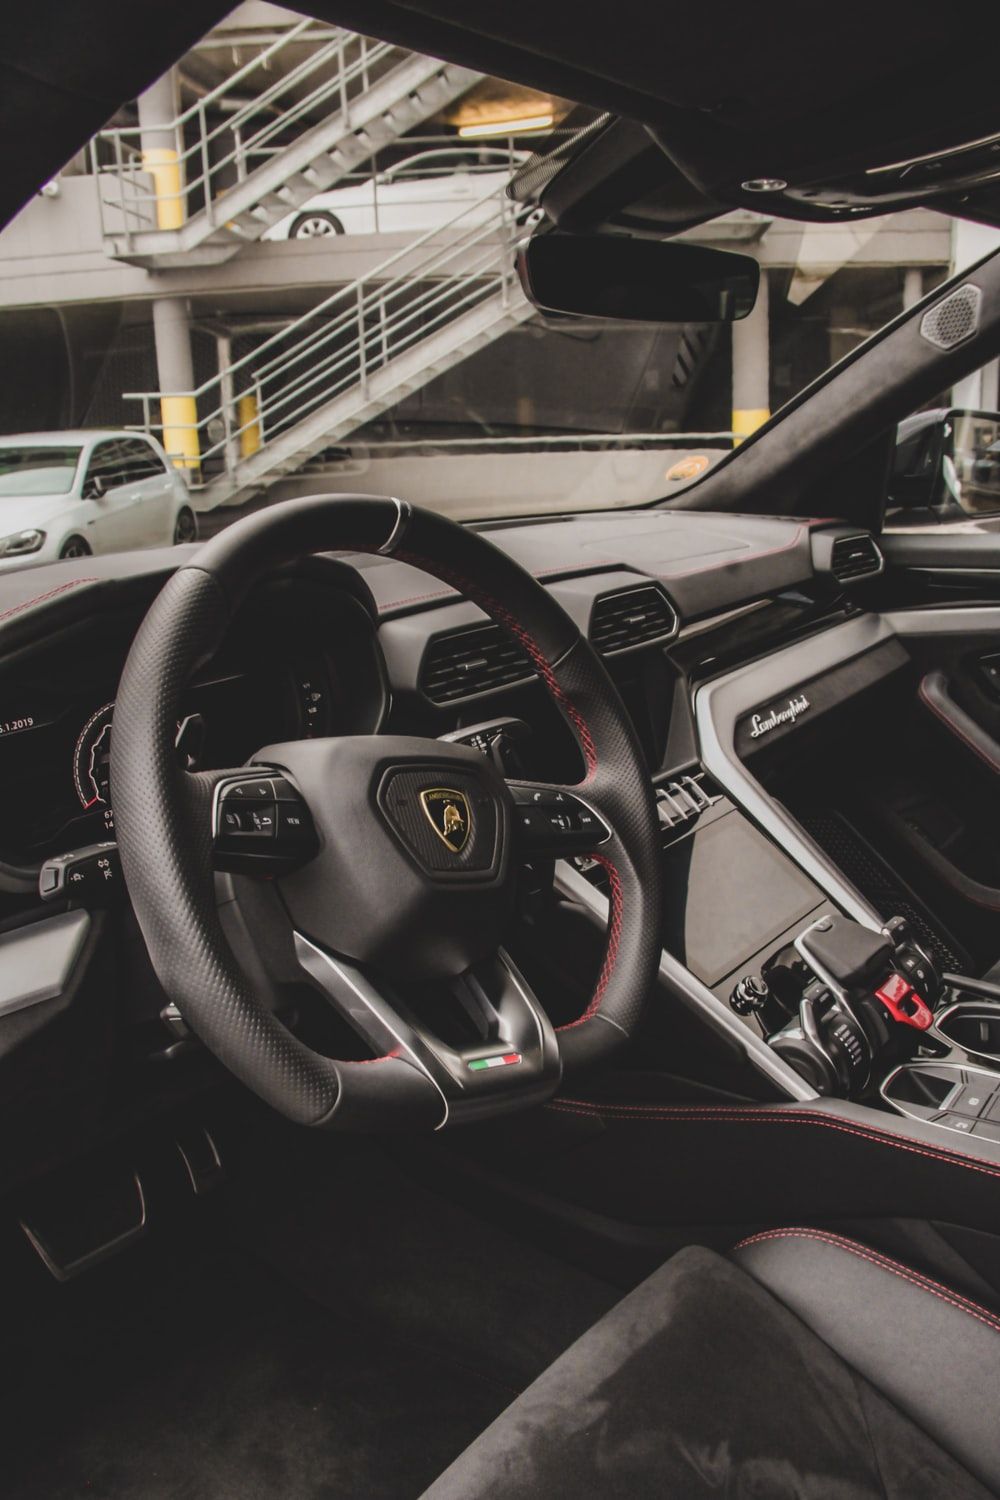 Lamborghini Interior Picture. Download Free Image